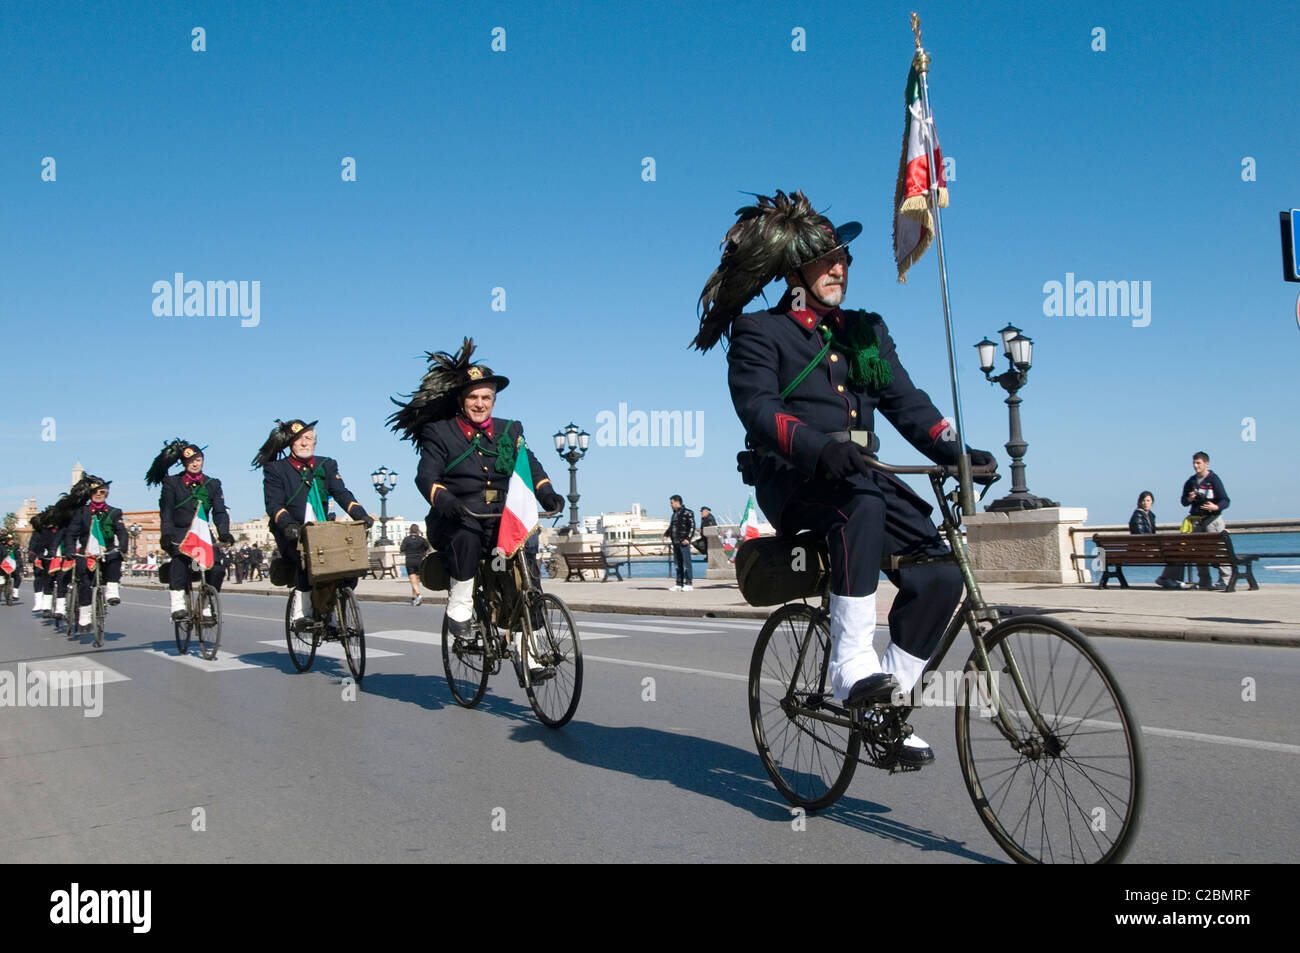 L'armée italienne Bersaglieri italie uniformes uniforme en plumes chapeaux  Chapeau élégant style cool riding bikes cycles cycle vélo Photo Stock -  Alamy